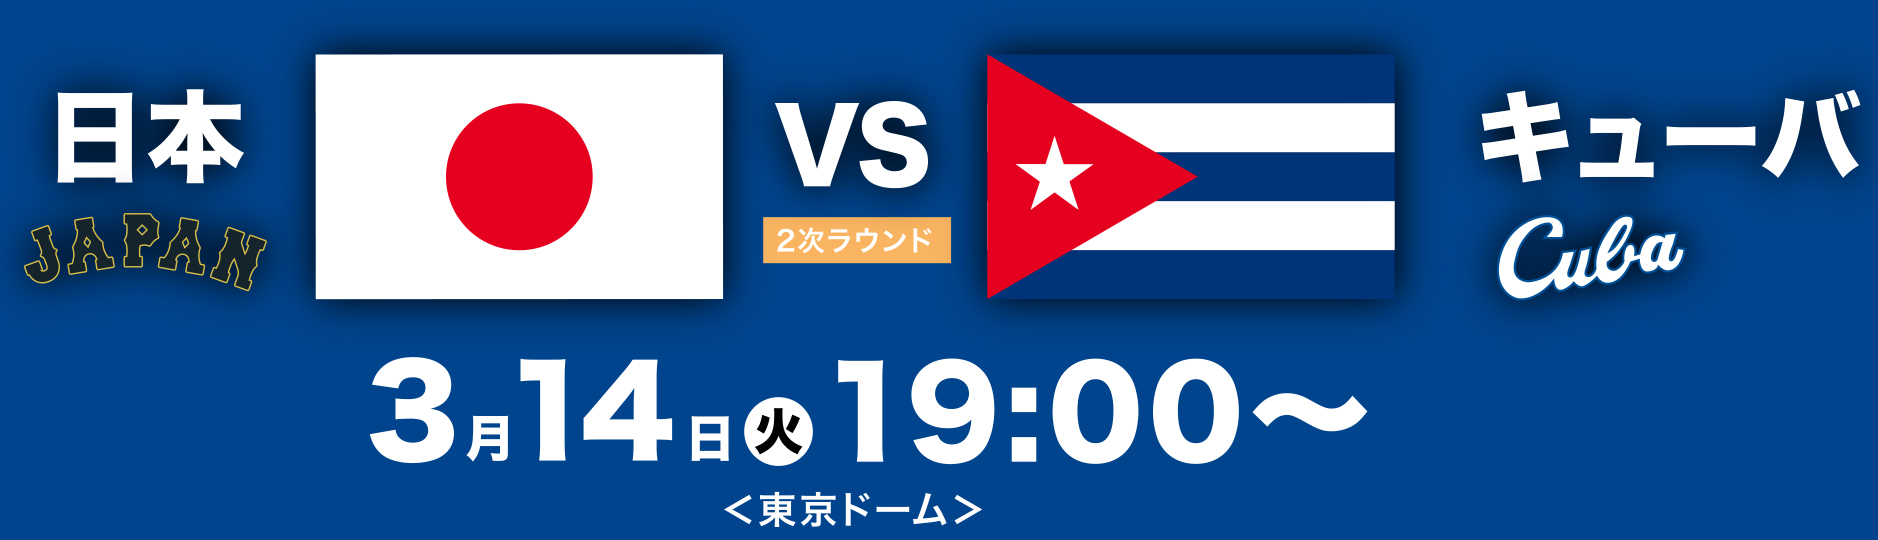 WBC 日本VSキューバ